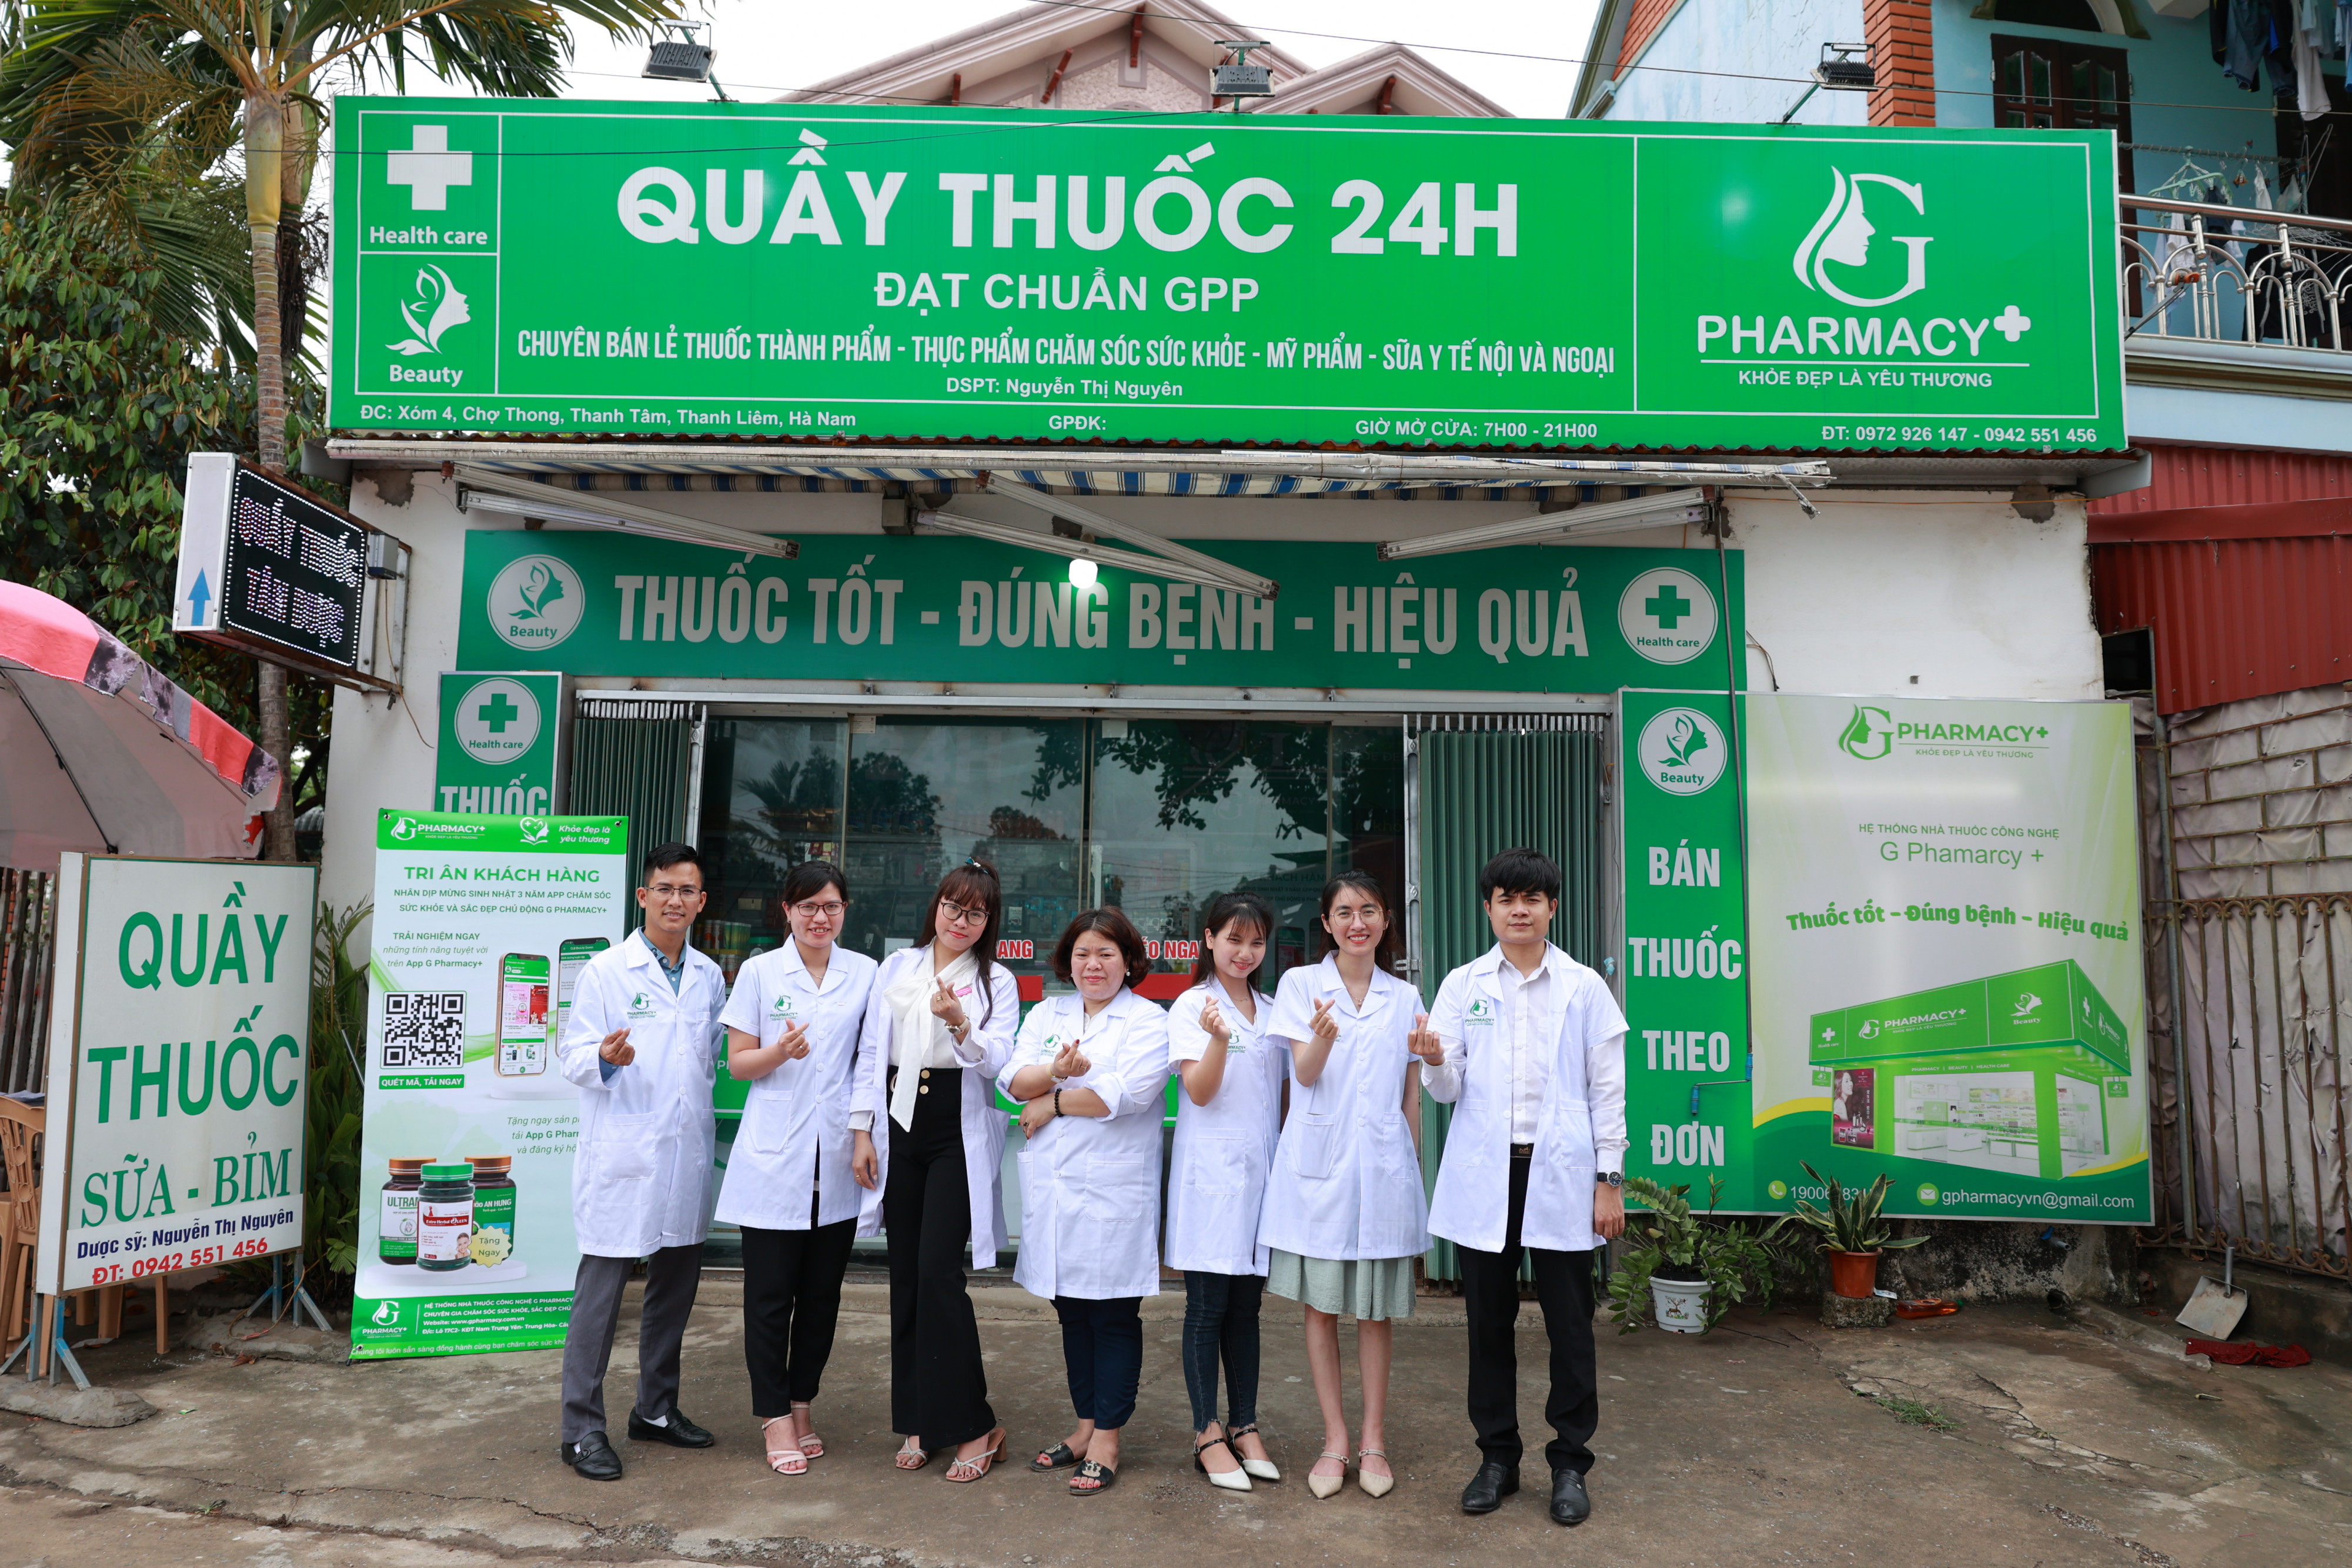 Thành công từ sự kiện tri ân khách hàng tại Quầy thuốc 24h Hà Nam thuộc G Pharmacy+